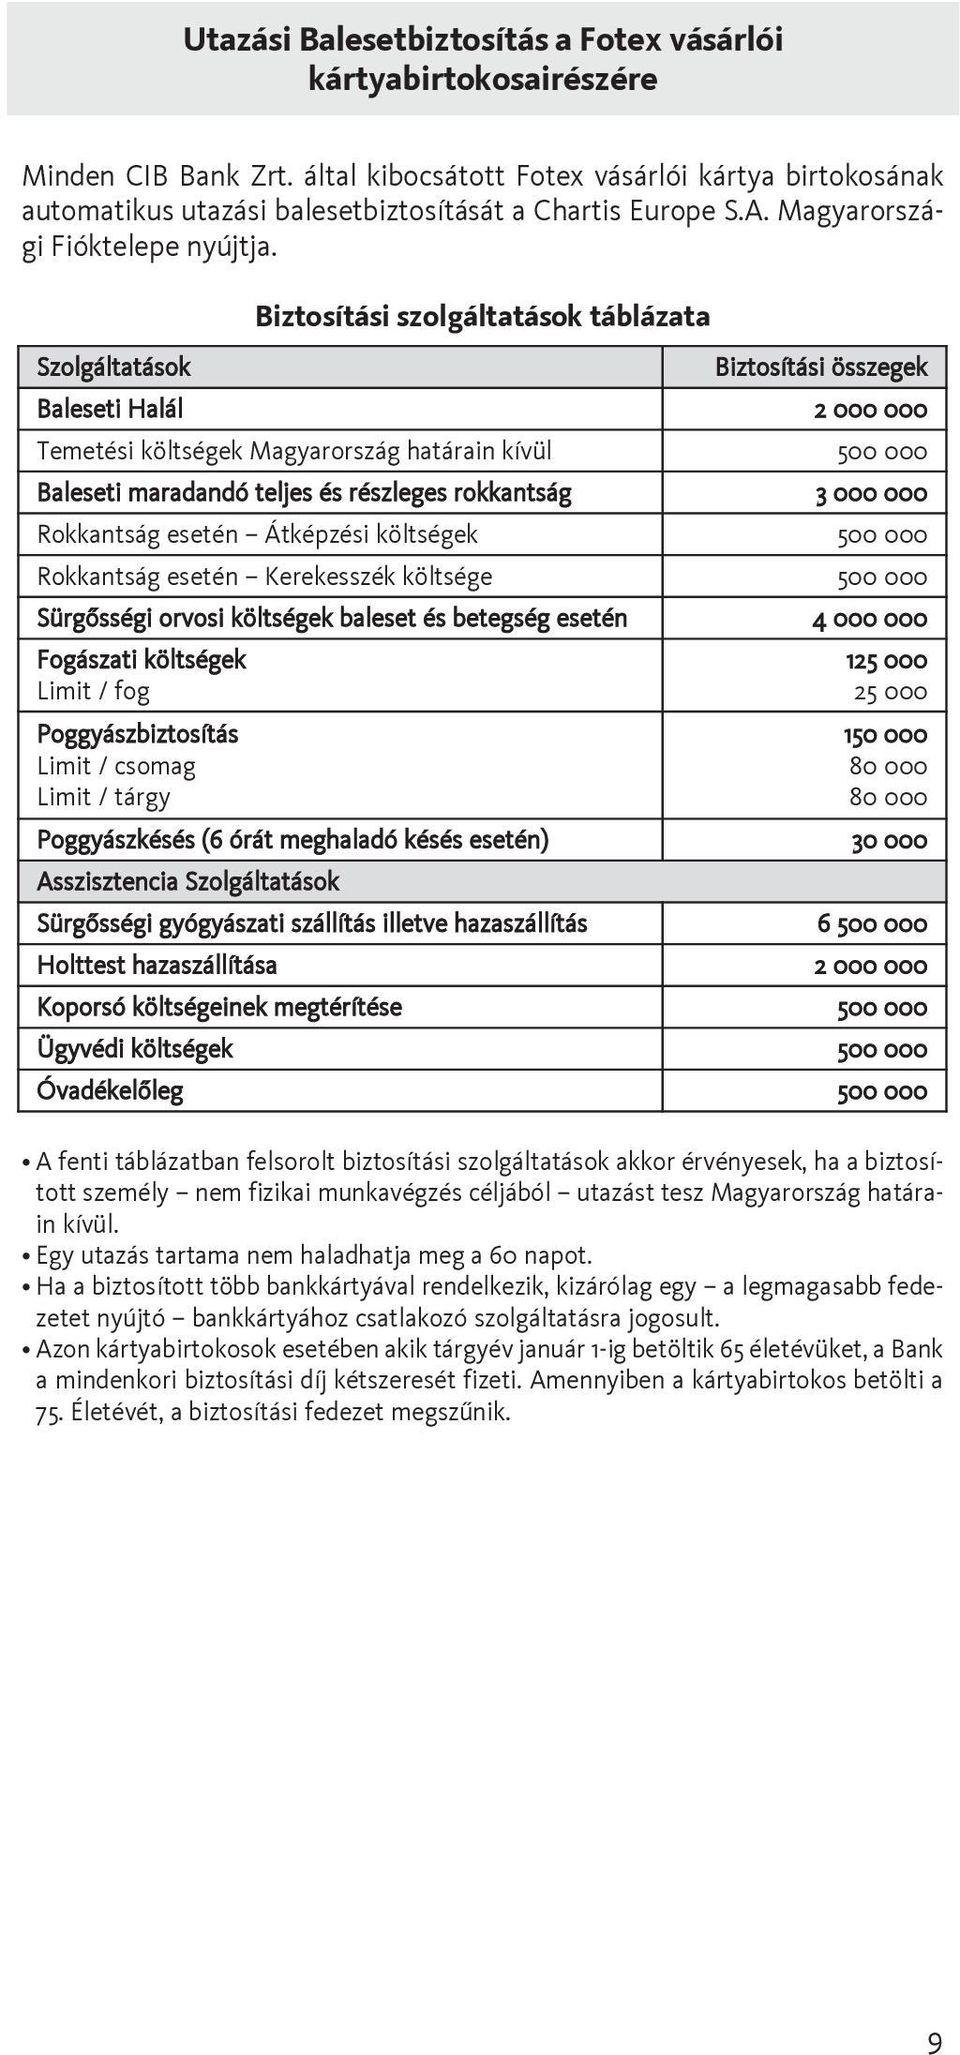 Szolgáltatások Biztosítási szolgáltatások táblázata Biztosítási összegek Baleseti Halál 2 000 000 Temetési költségek Magyarország határain kívül 500 000 Baleseti maradandó teljes és részleges